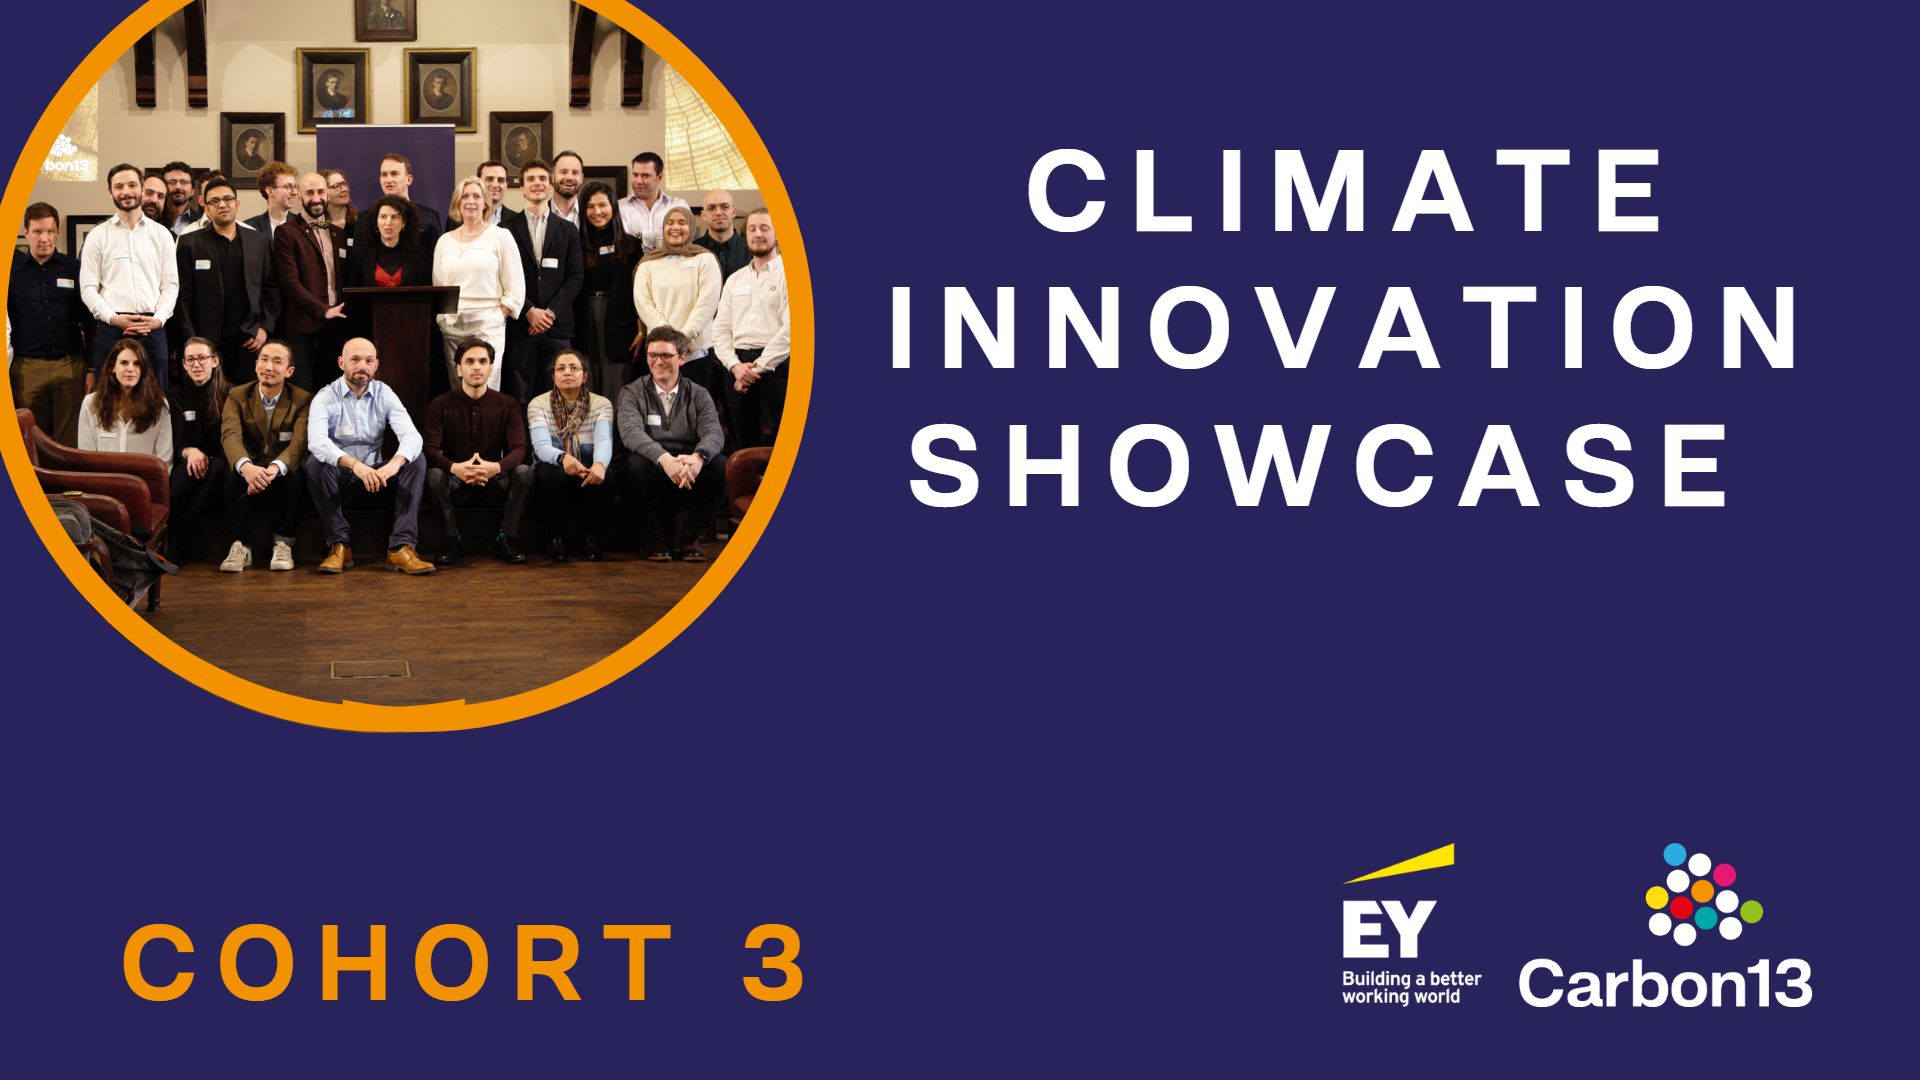 Climate innovation showcase cohort 3